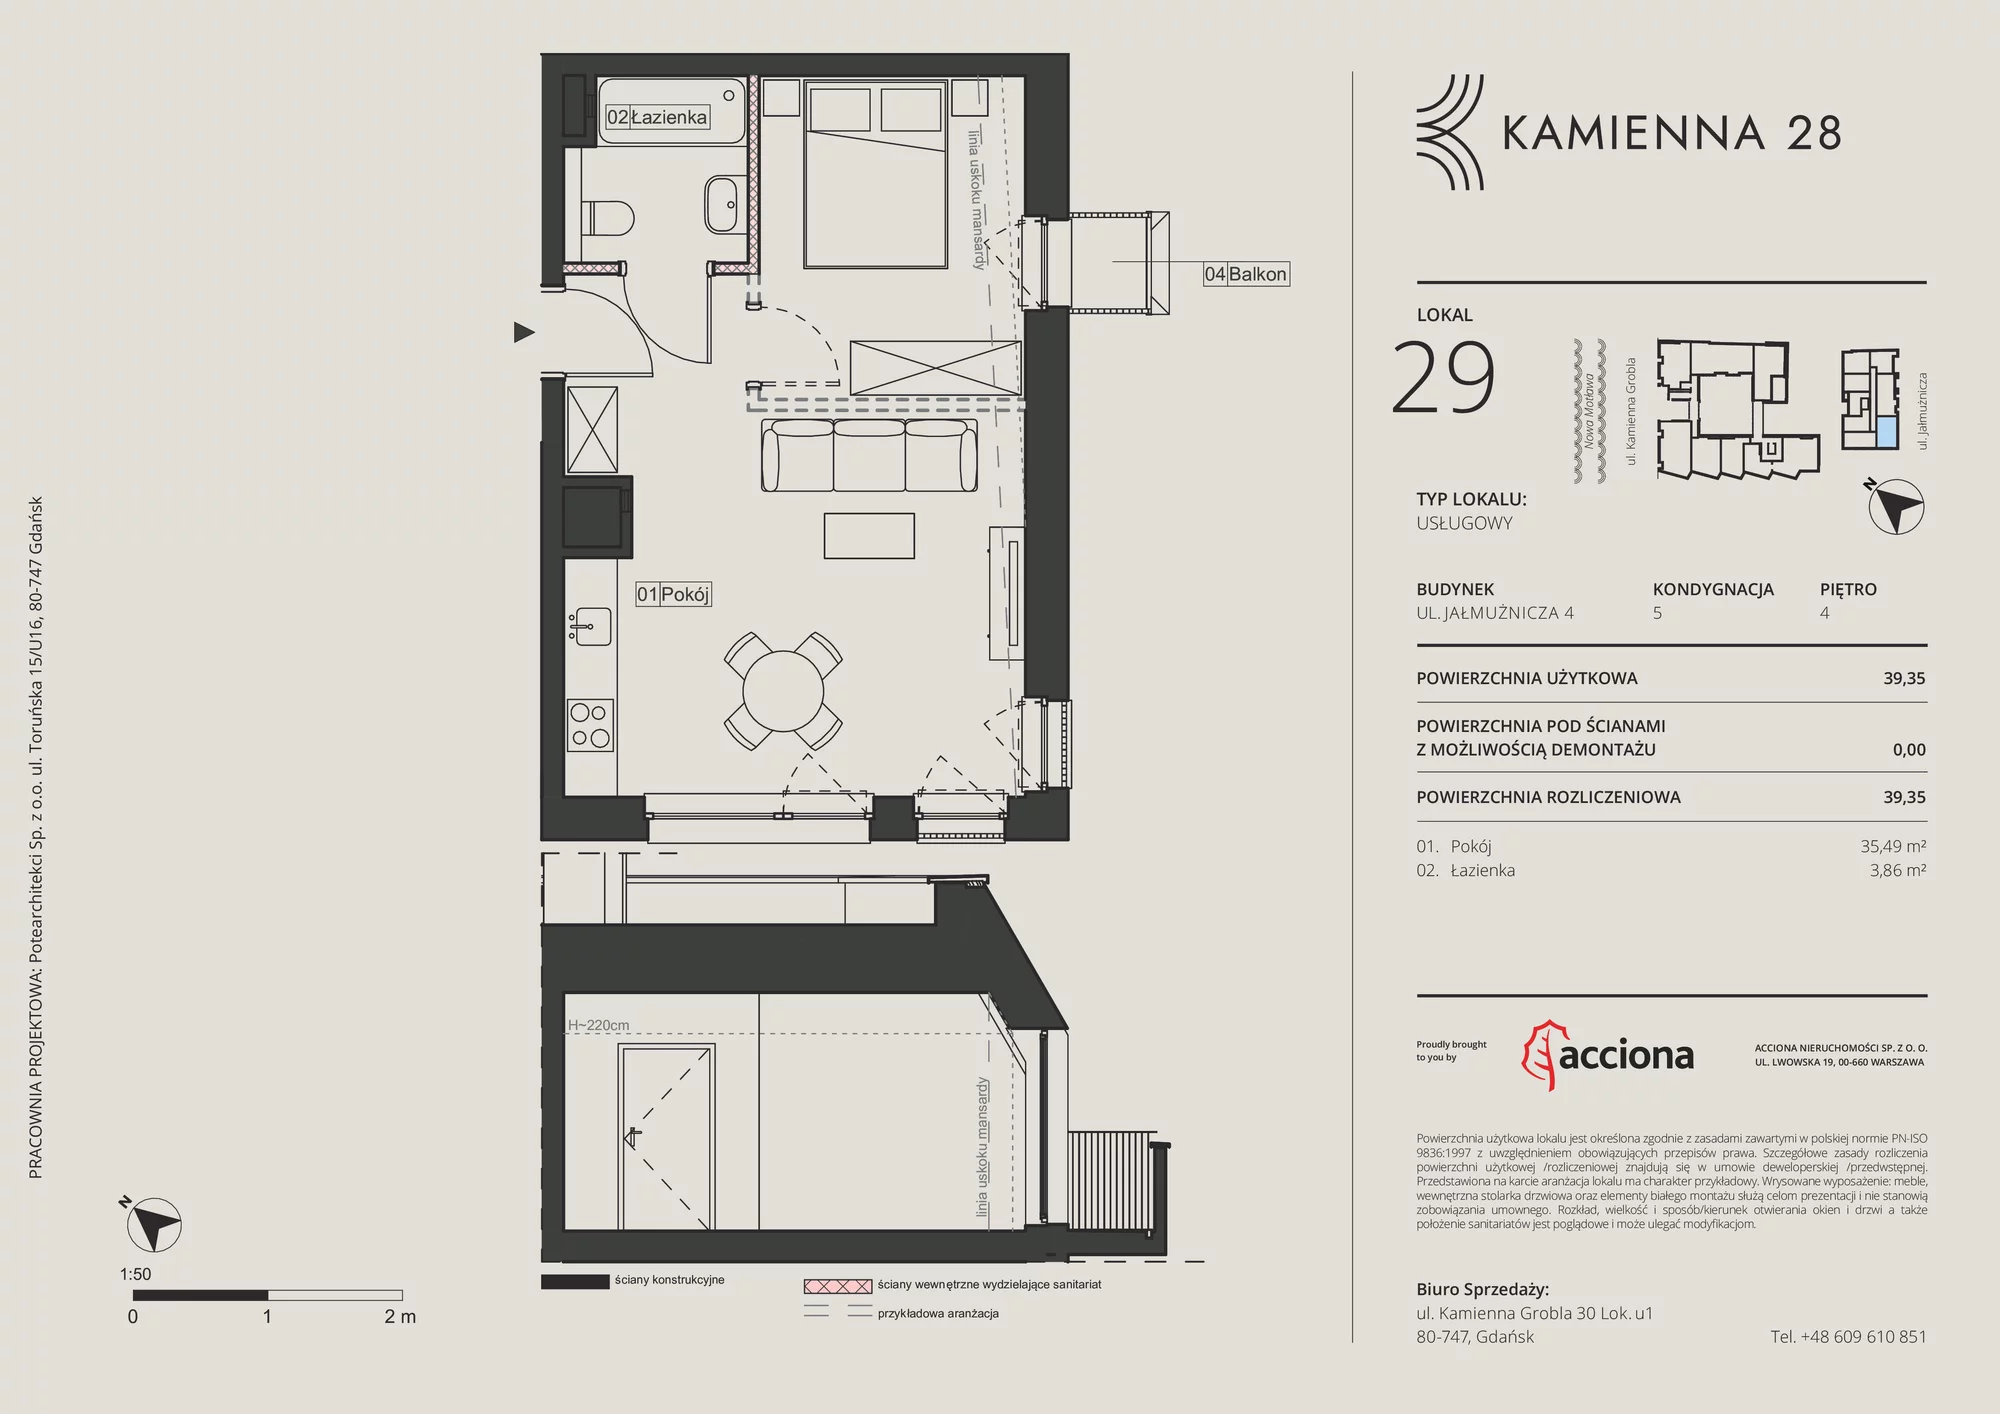 Apartament inwestycyjny 39,35 m², piętro 4, oferta nr 4.29, Kamienna 28 - apartamenty inwestycyjne, Gdańsk, Śródmieście, Dolne Miasto, ul. Jałmużnicza 4